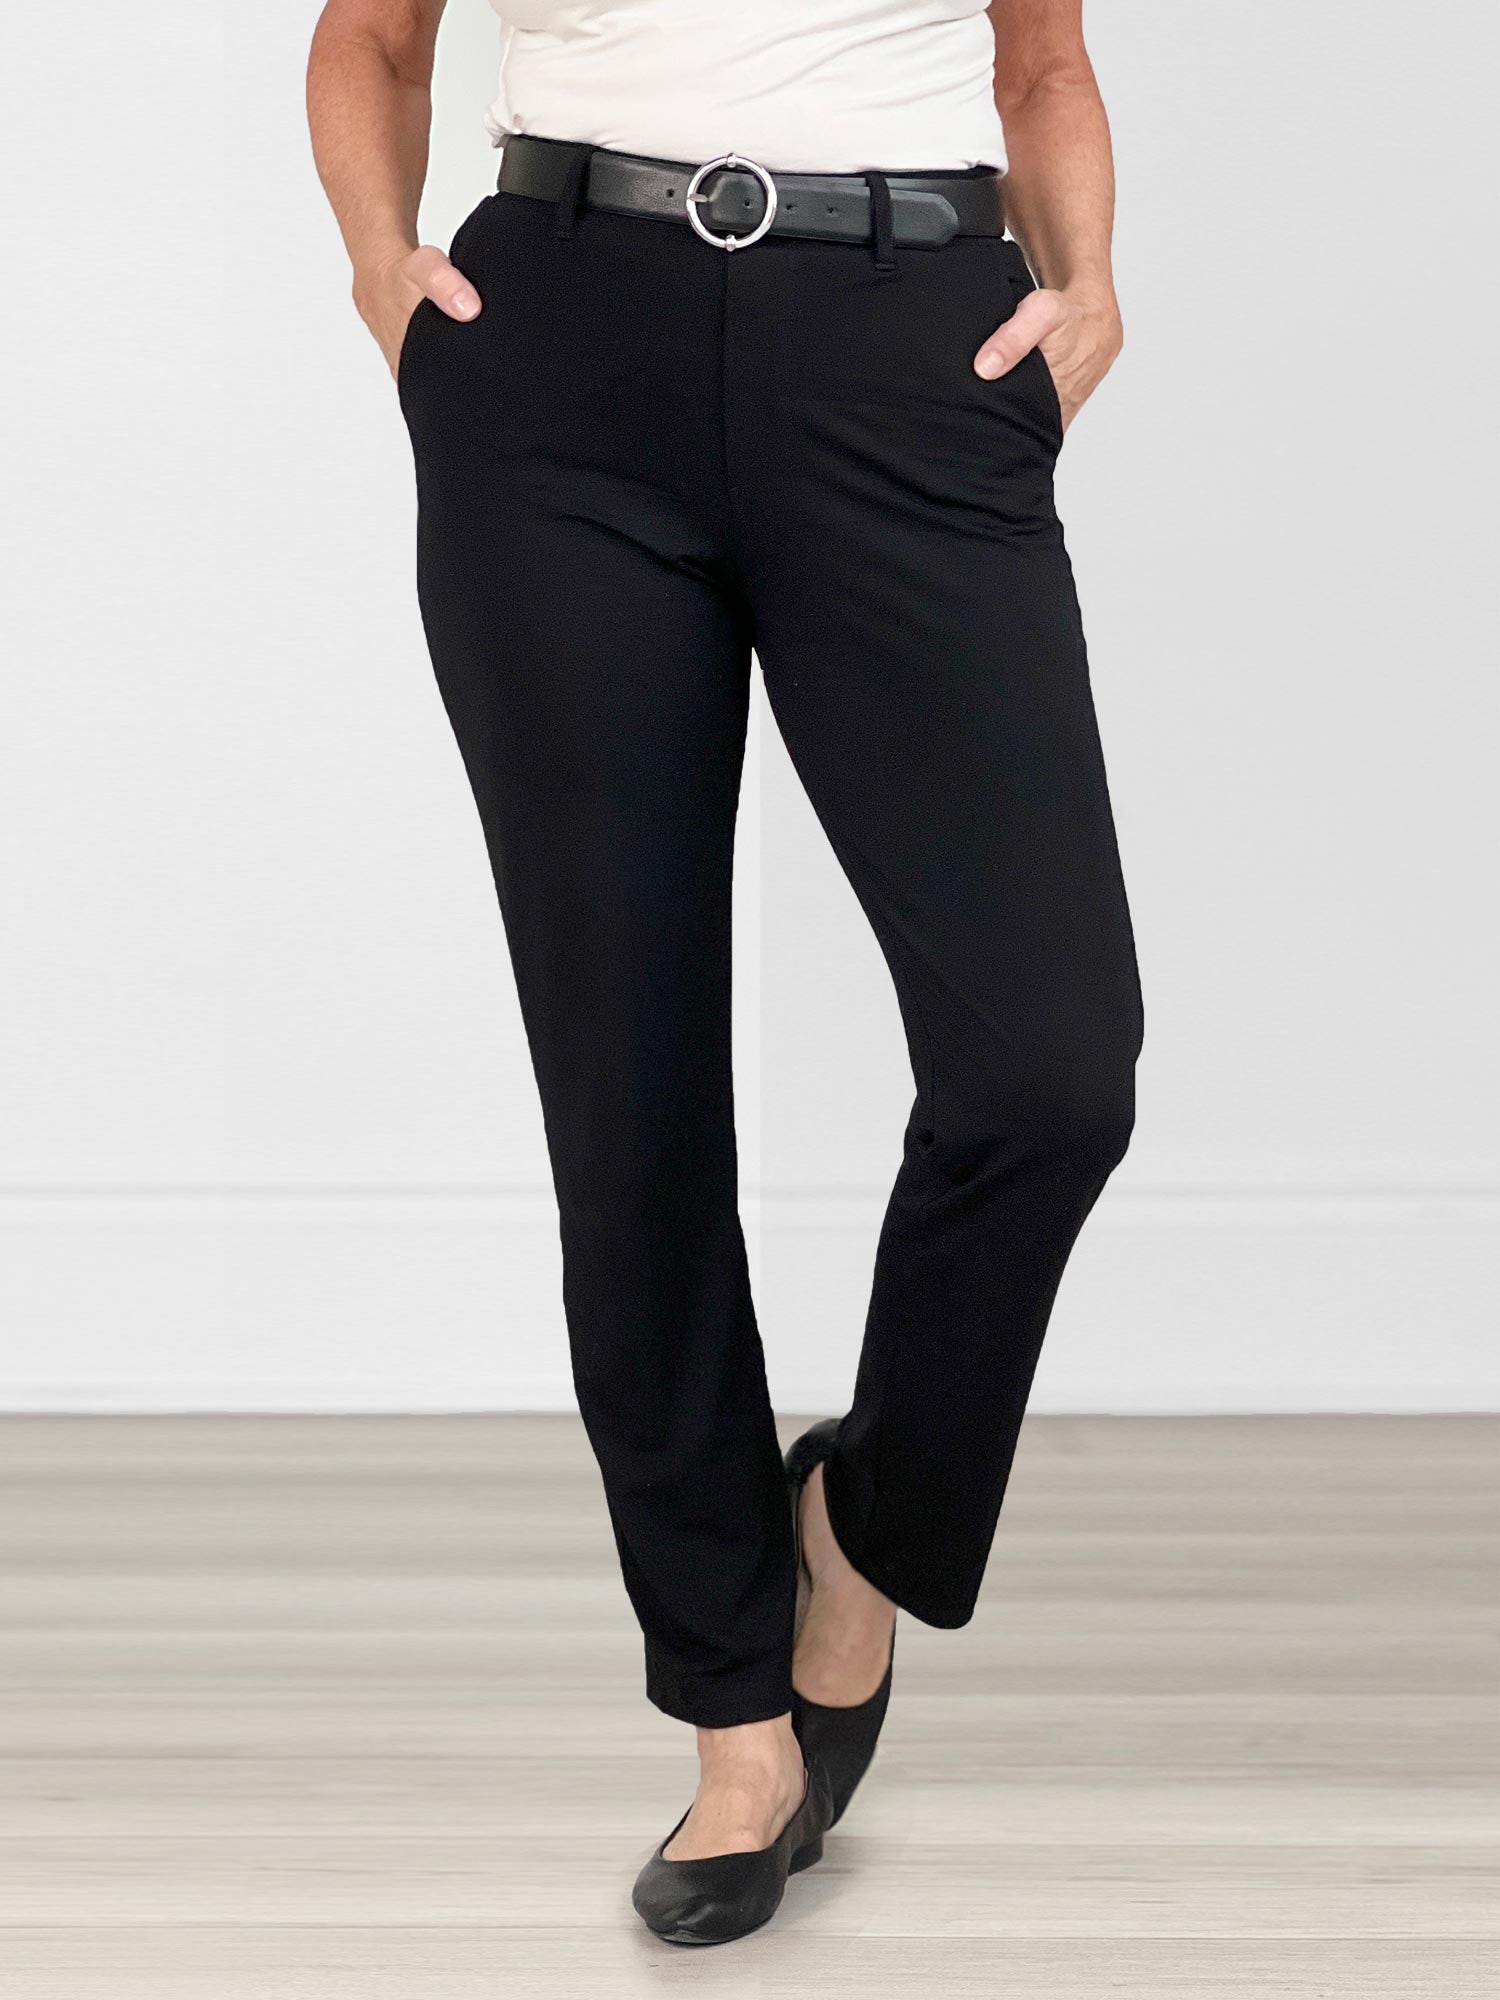 Midwaist Black Slacks Pants for Women S-2XL #2202